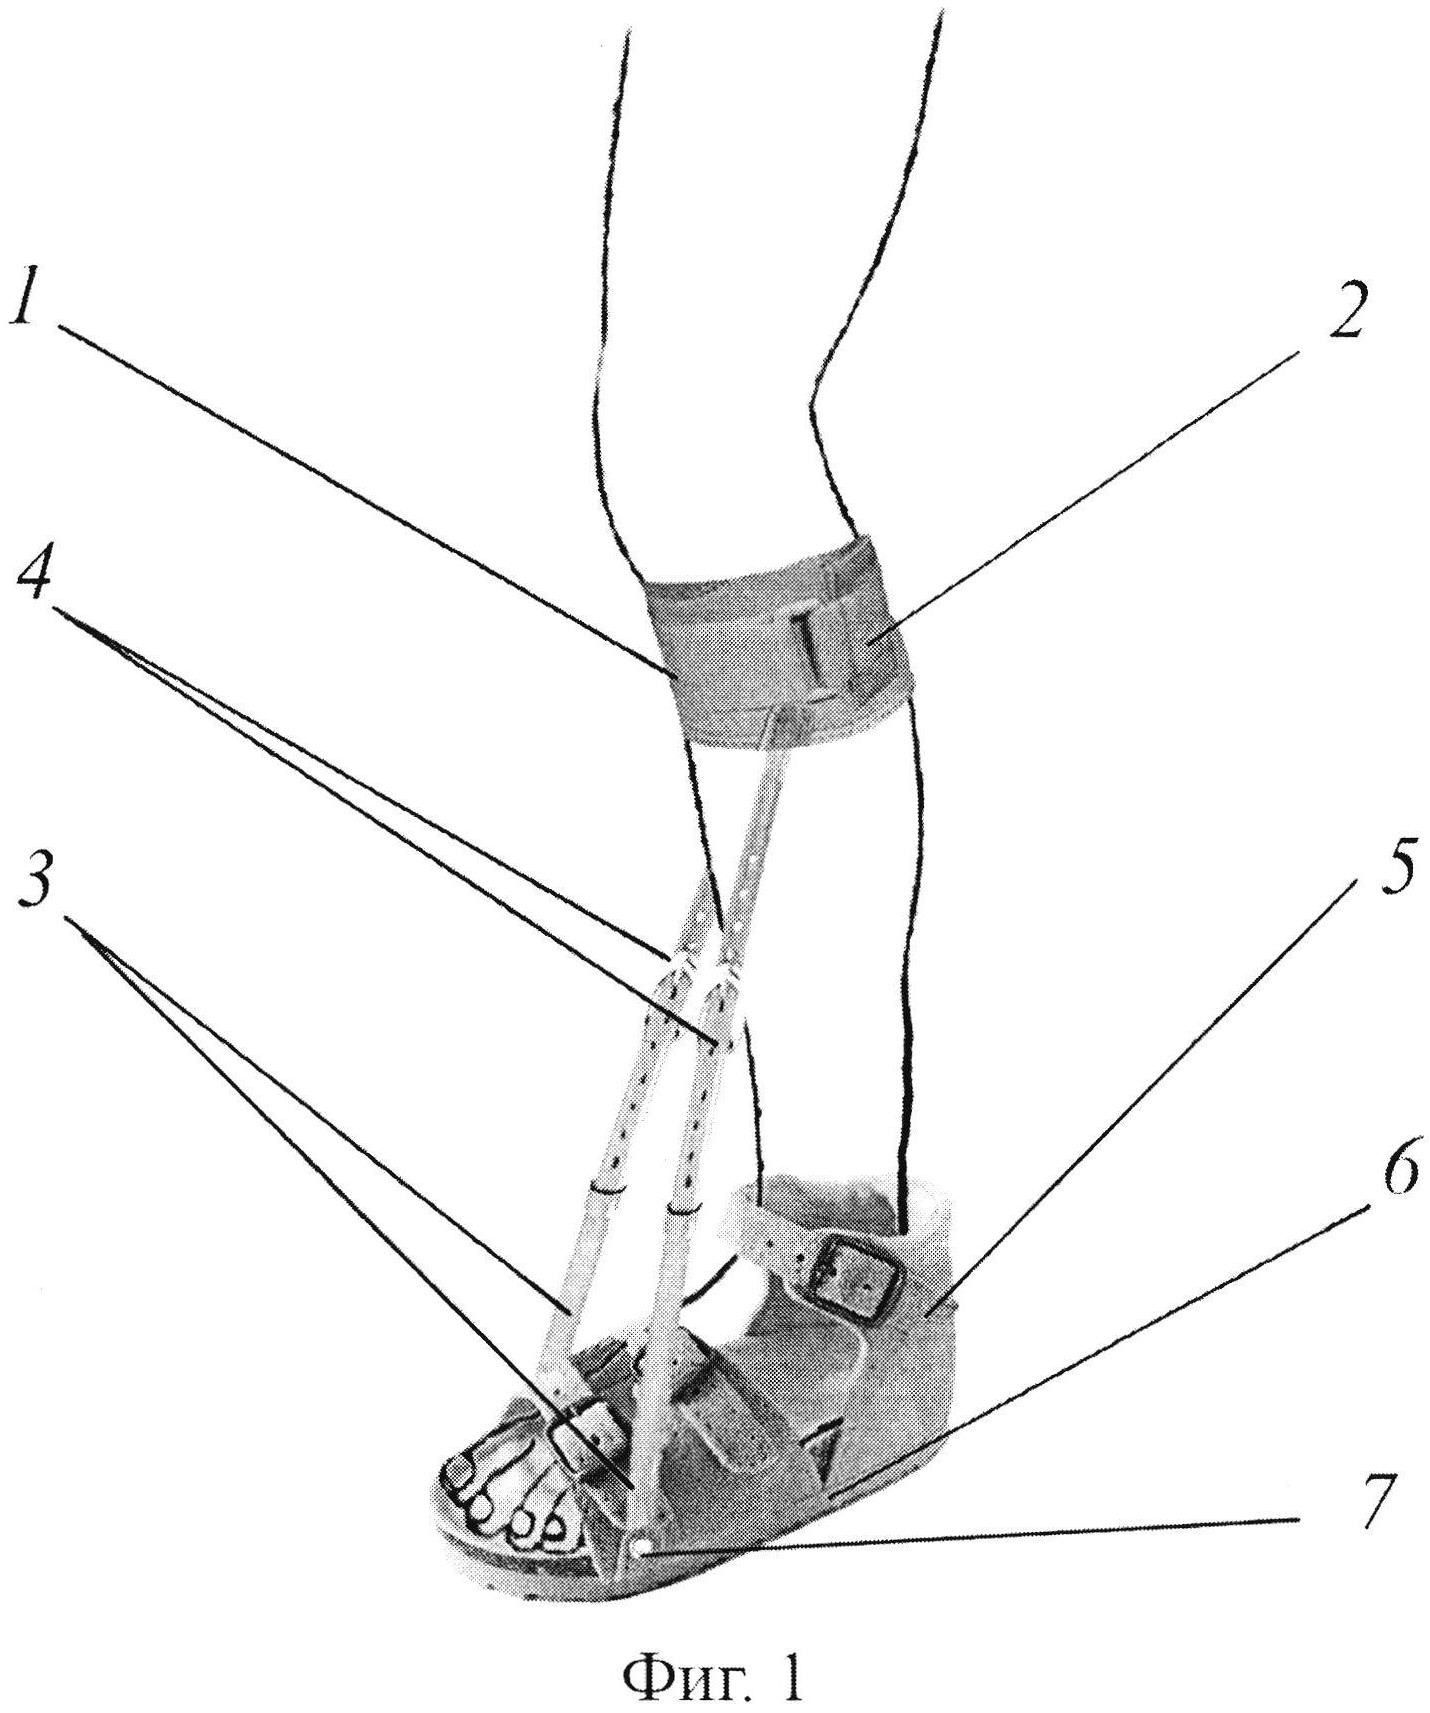 Укладка голеностопного сустава. Анкерная фиксация ахиллова сухожилия. Тренажер для растяжки ахиллова сухожилия ног. Анкерный винт для фиксирования ахиллова сухожилия. Голеностоп ахиллова сухожилия.